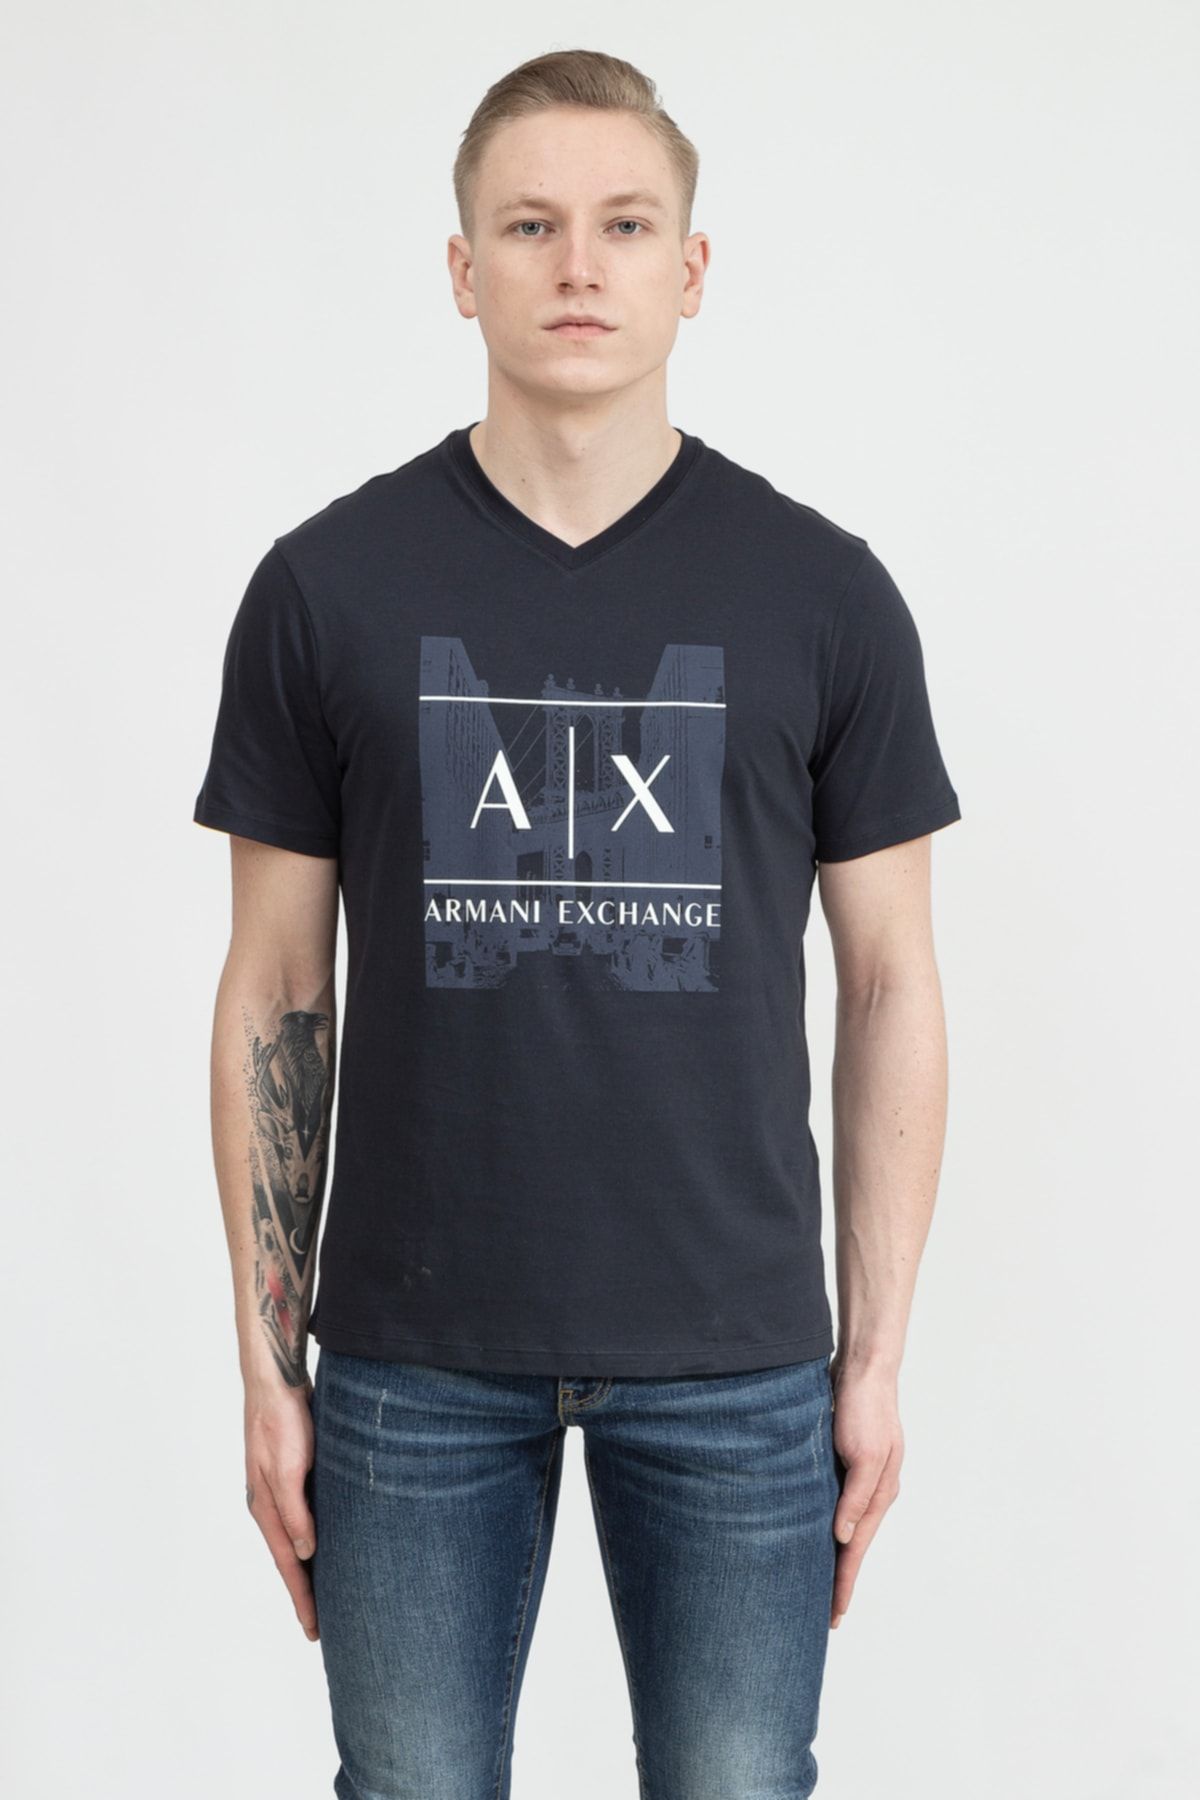 Armani Exchange Erkek V Yaka T-shirt3lztayzj8tz